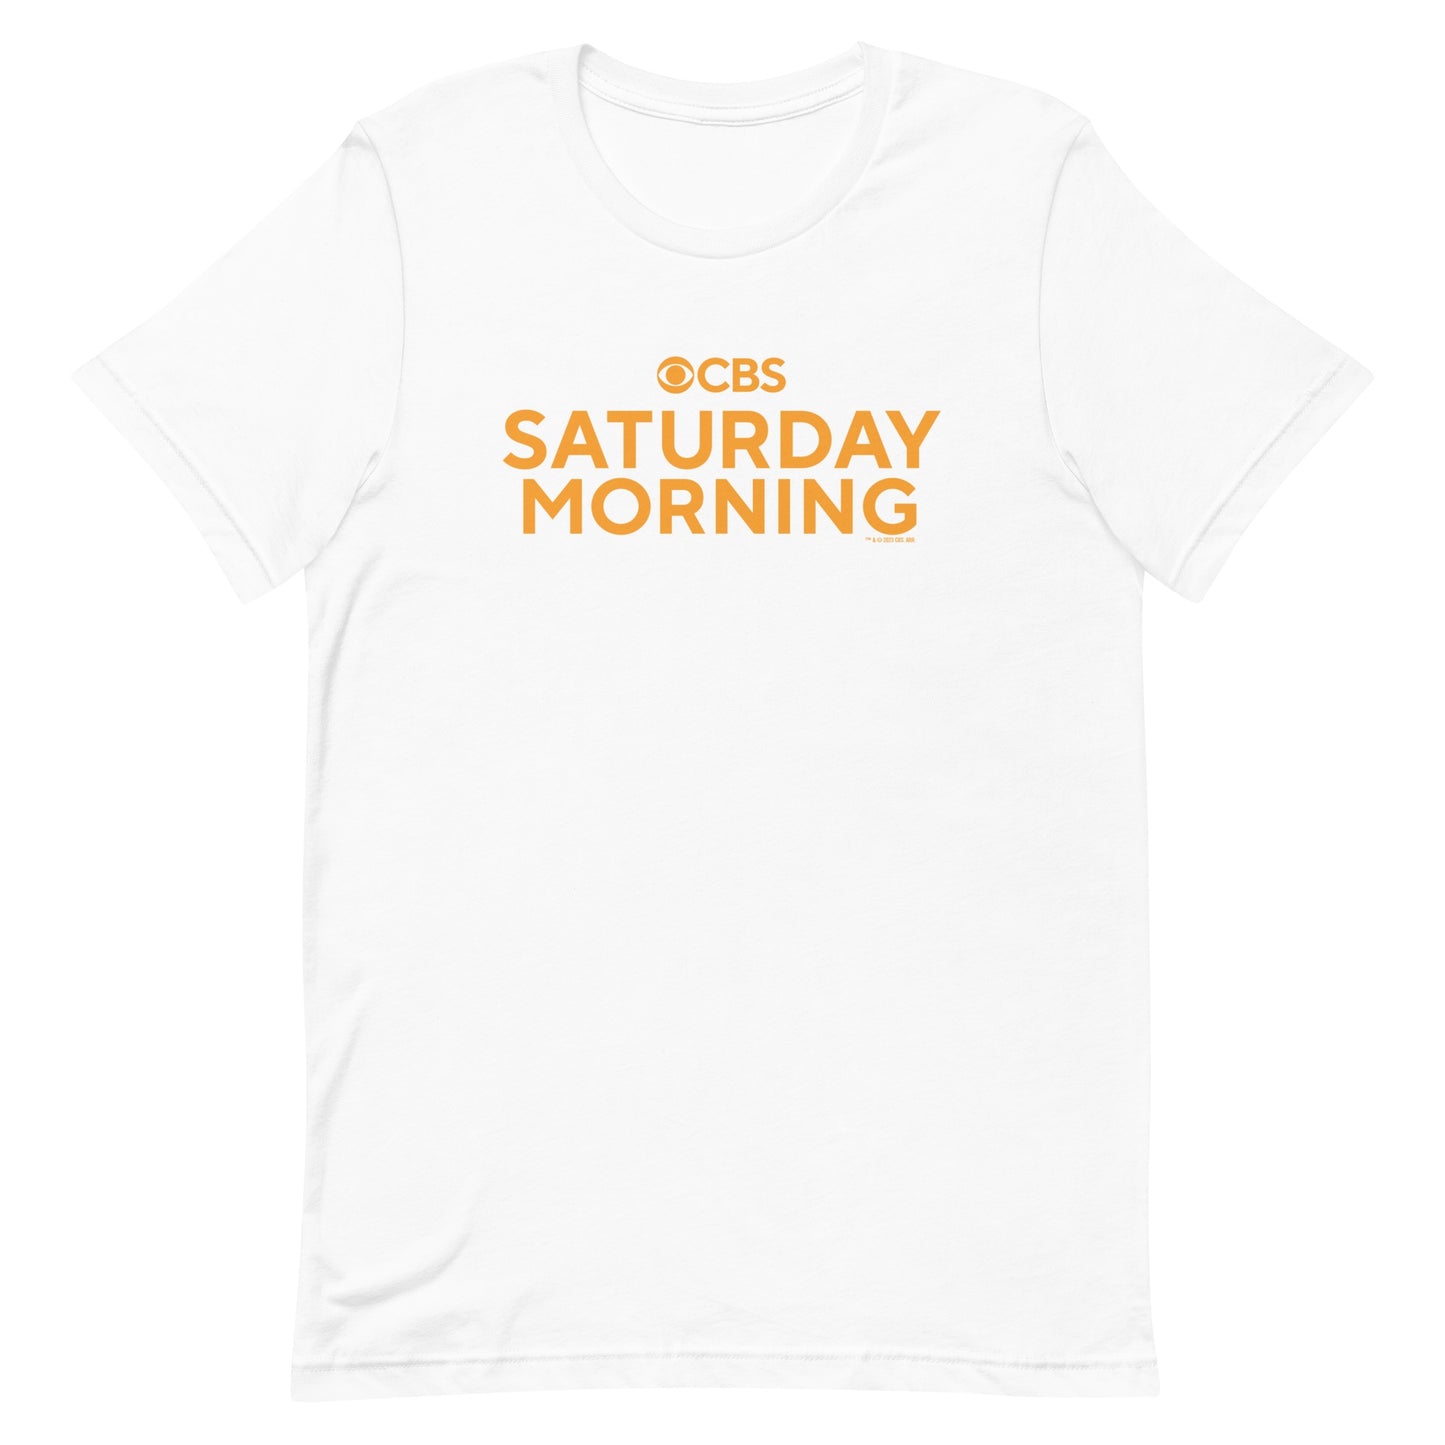 CBS Samstagmorgen Logo T-shirt